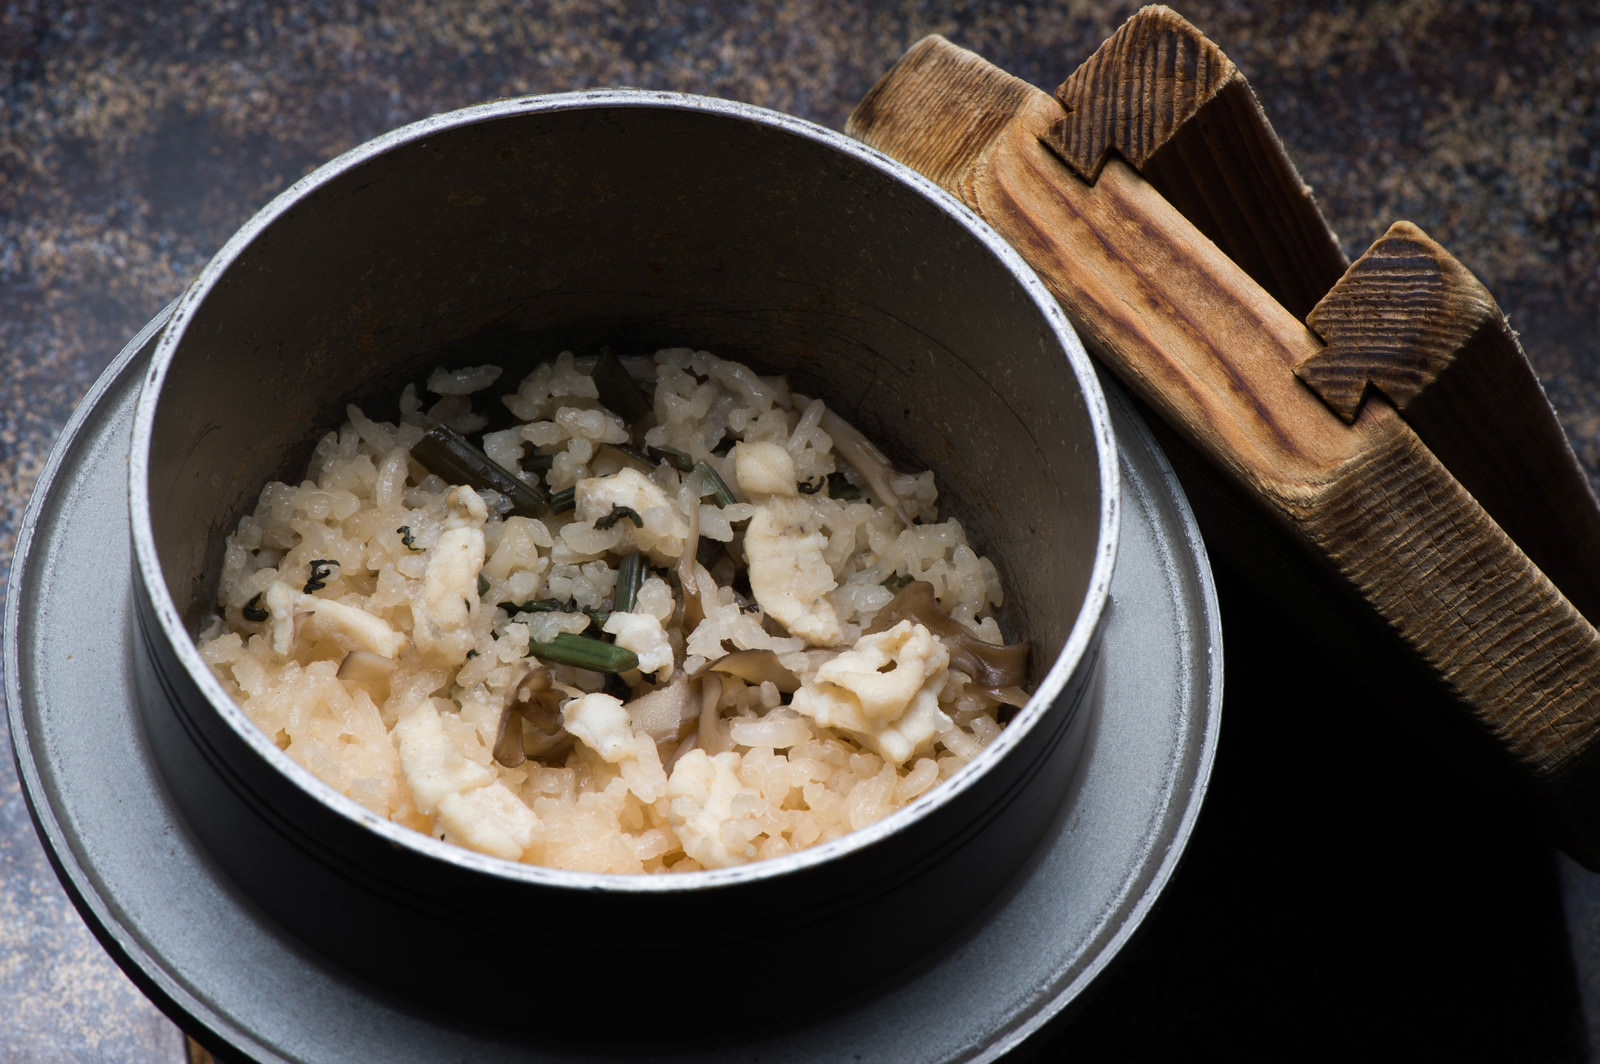 上品な出汁と飛騨ふぐの淡白な甘みが絶妙な栄太郎の釜飯のフリー素材